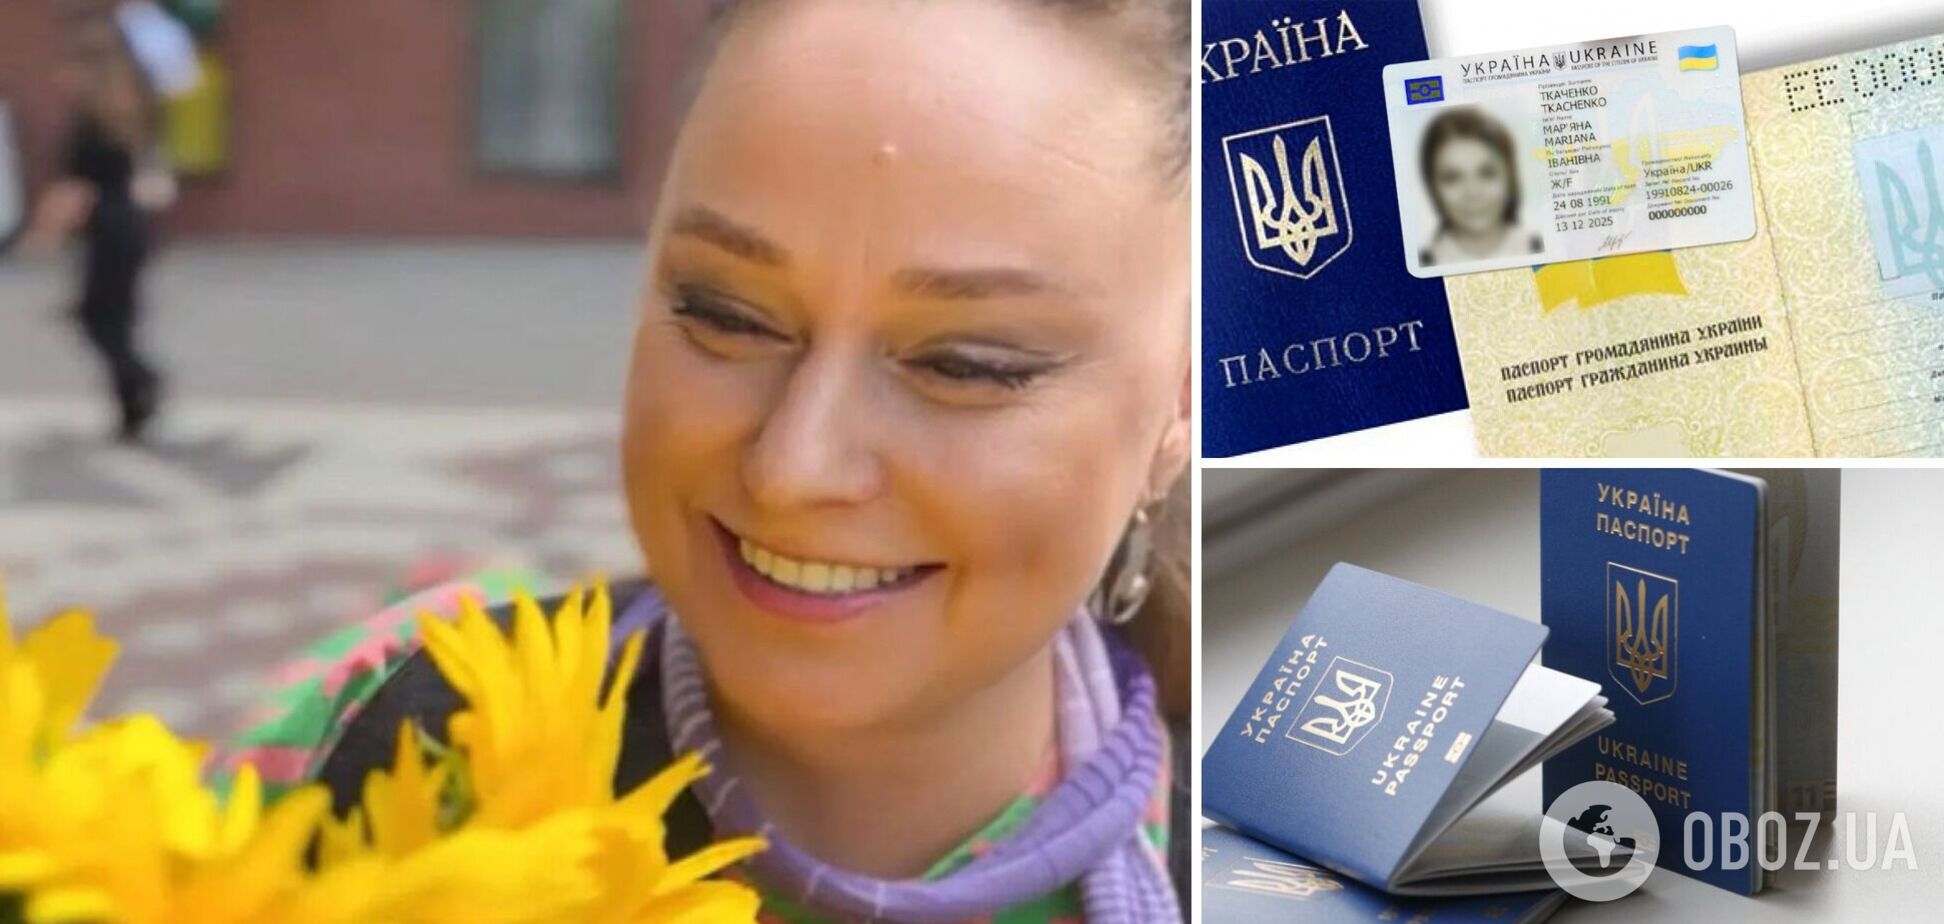 Звезда украинских сериалов официально изменила имя и фамилию из-за русификации. Эксклюзив